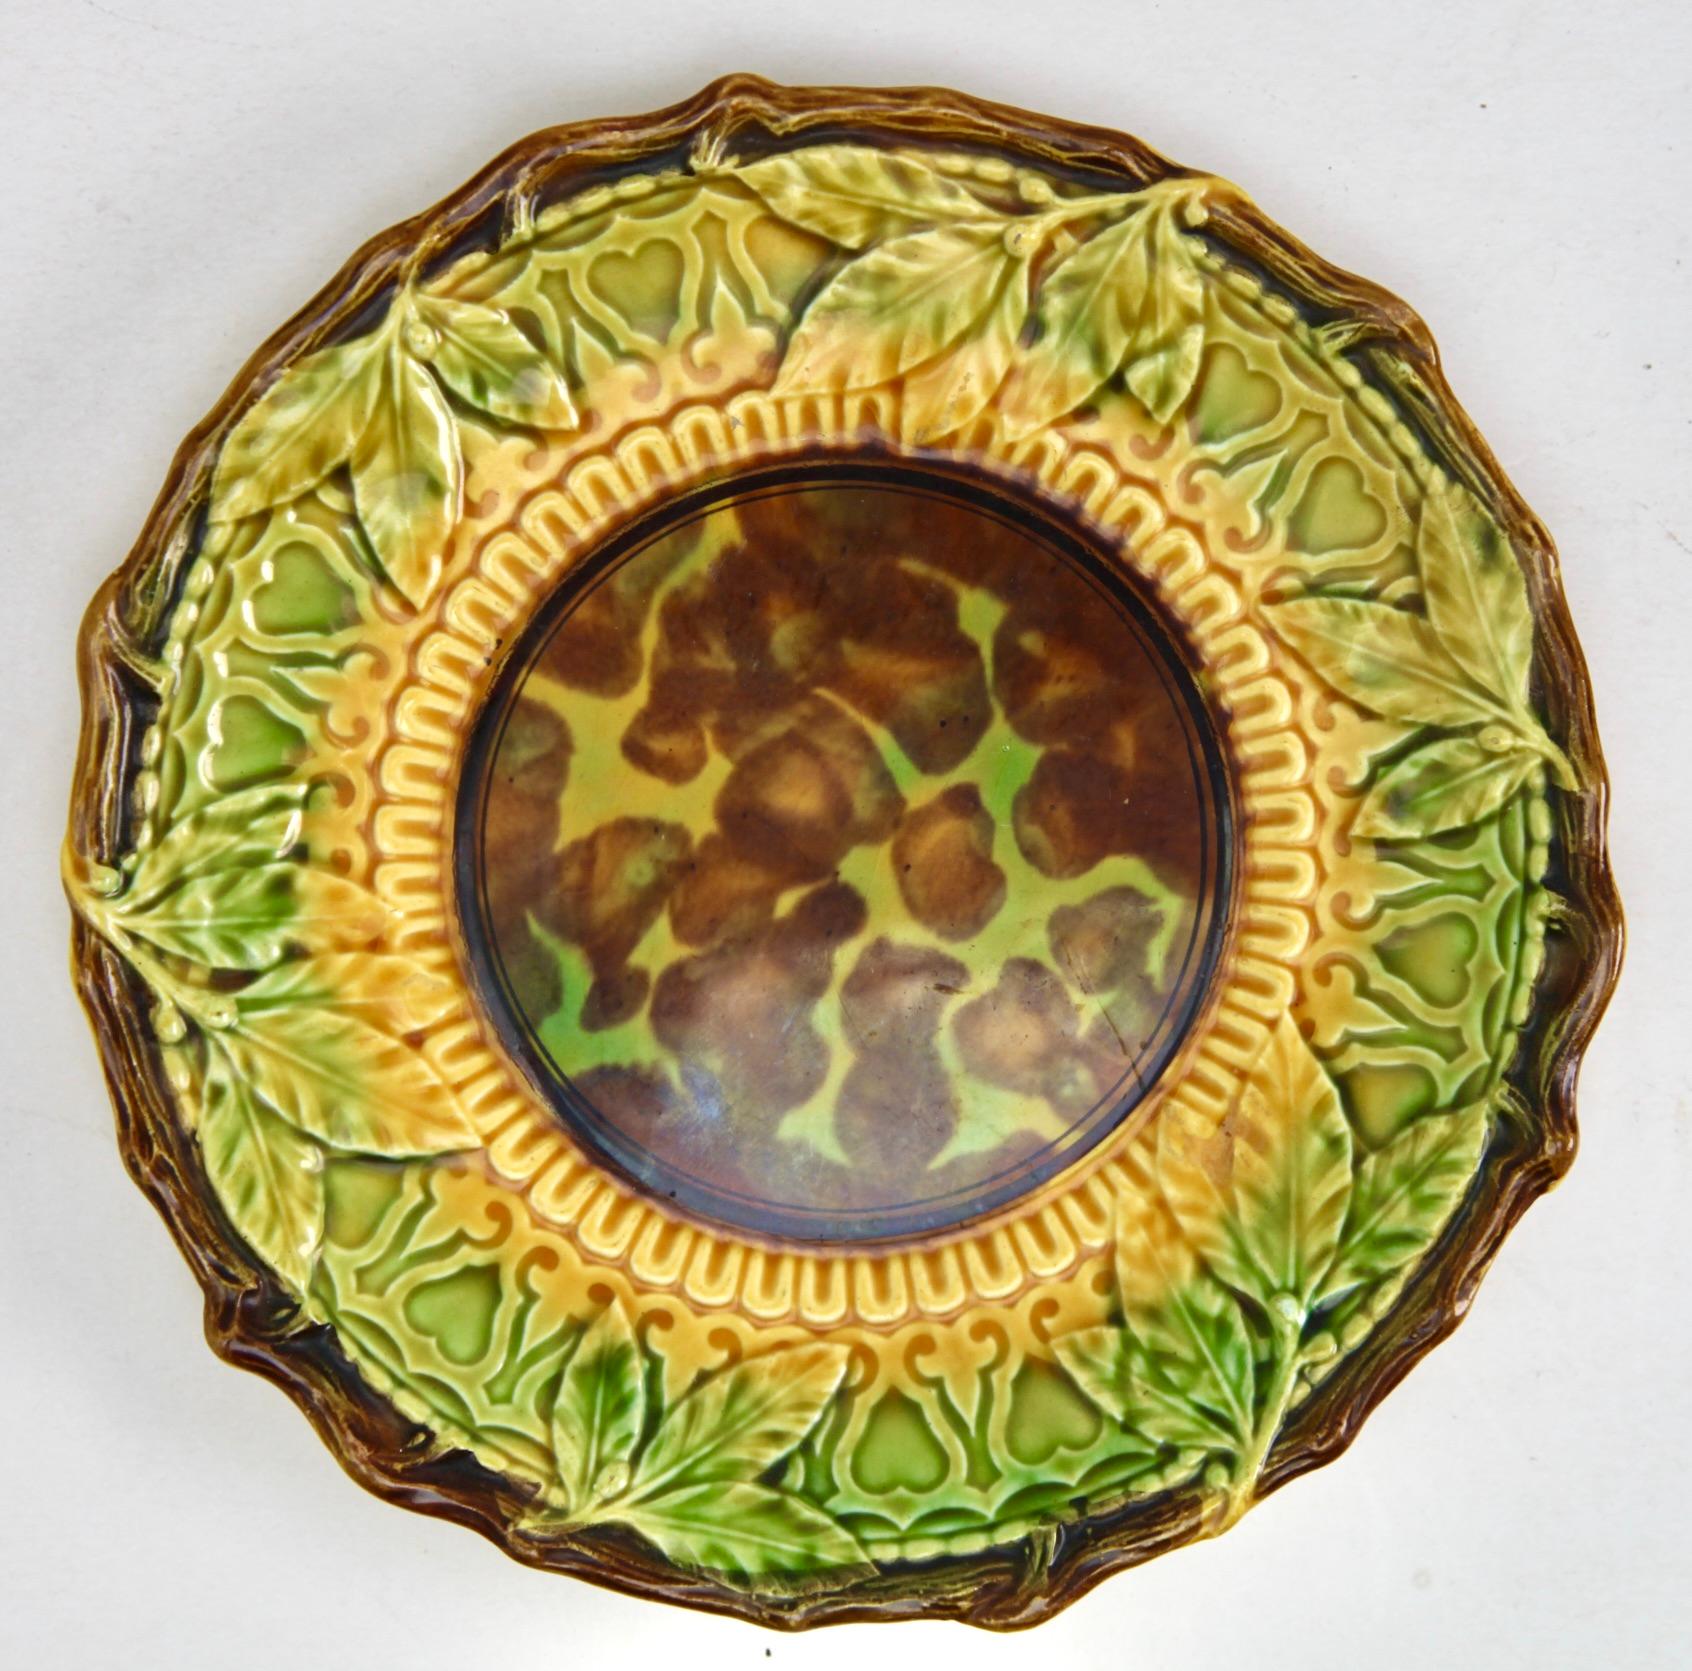 Service de vaisselle émaillée Art Nouveau Majolica de 9 pièces Motif de feuilles en relief.

La majolique de Sarreguemines est un type de faïence, décorée avec des glaçures au plomb colorées. 
La majolique victorienne a été fabriquée entre 1849 et